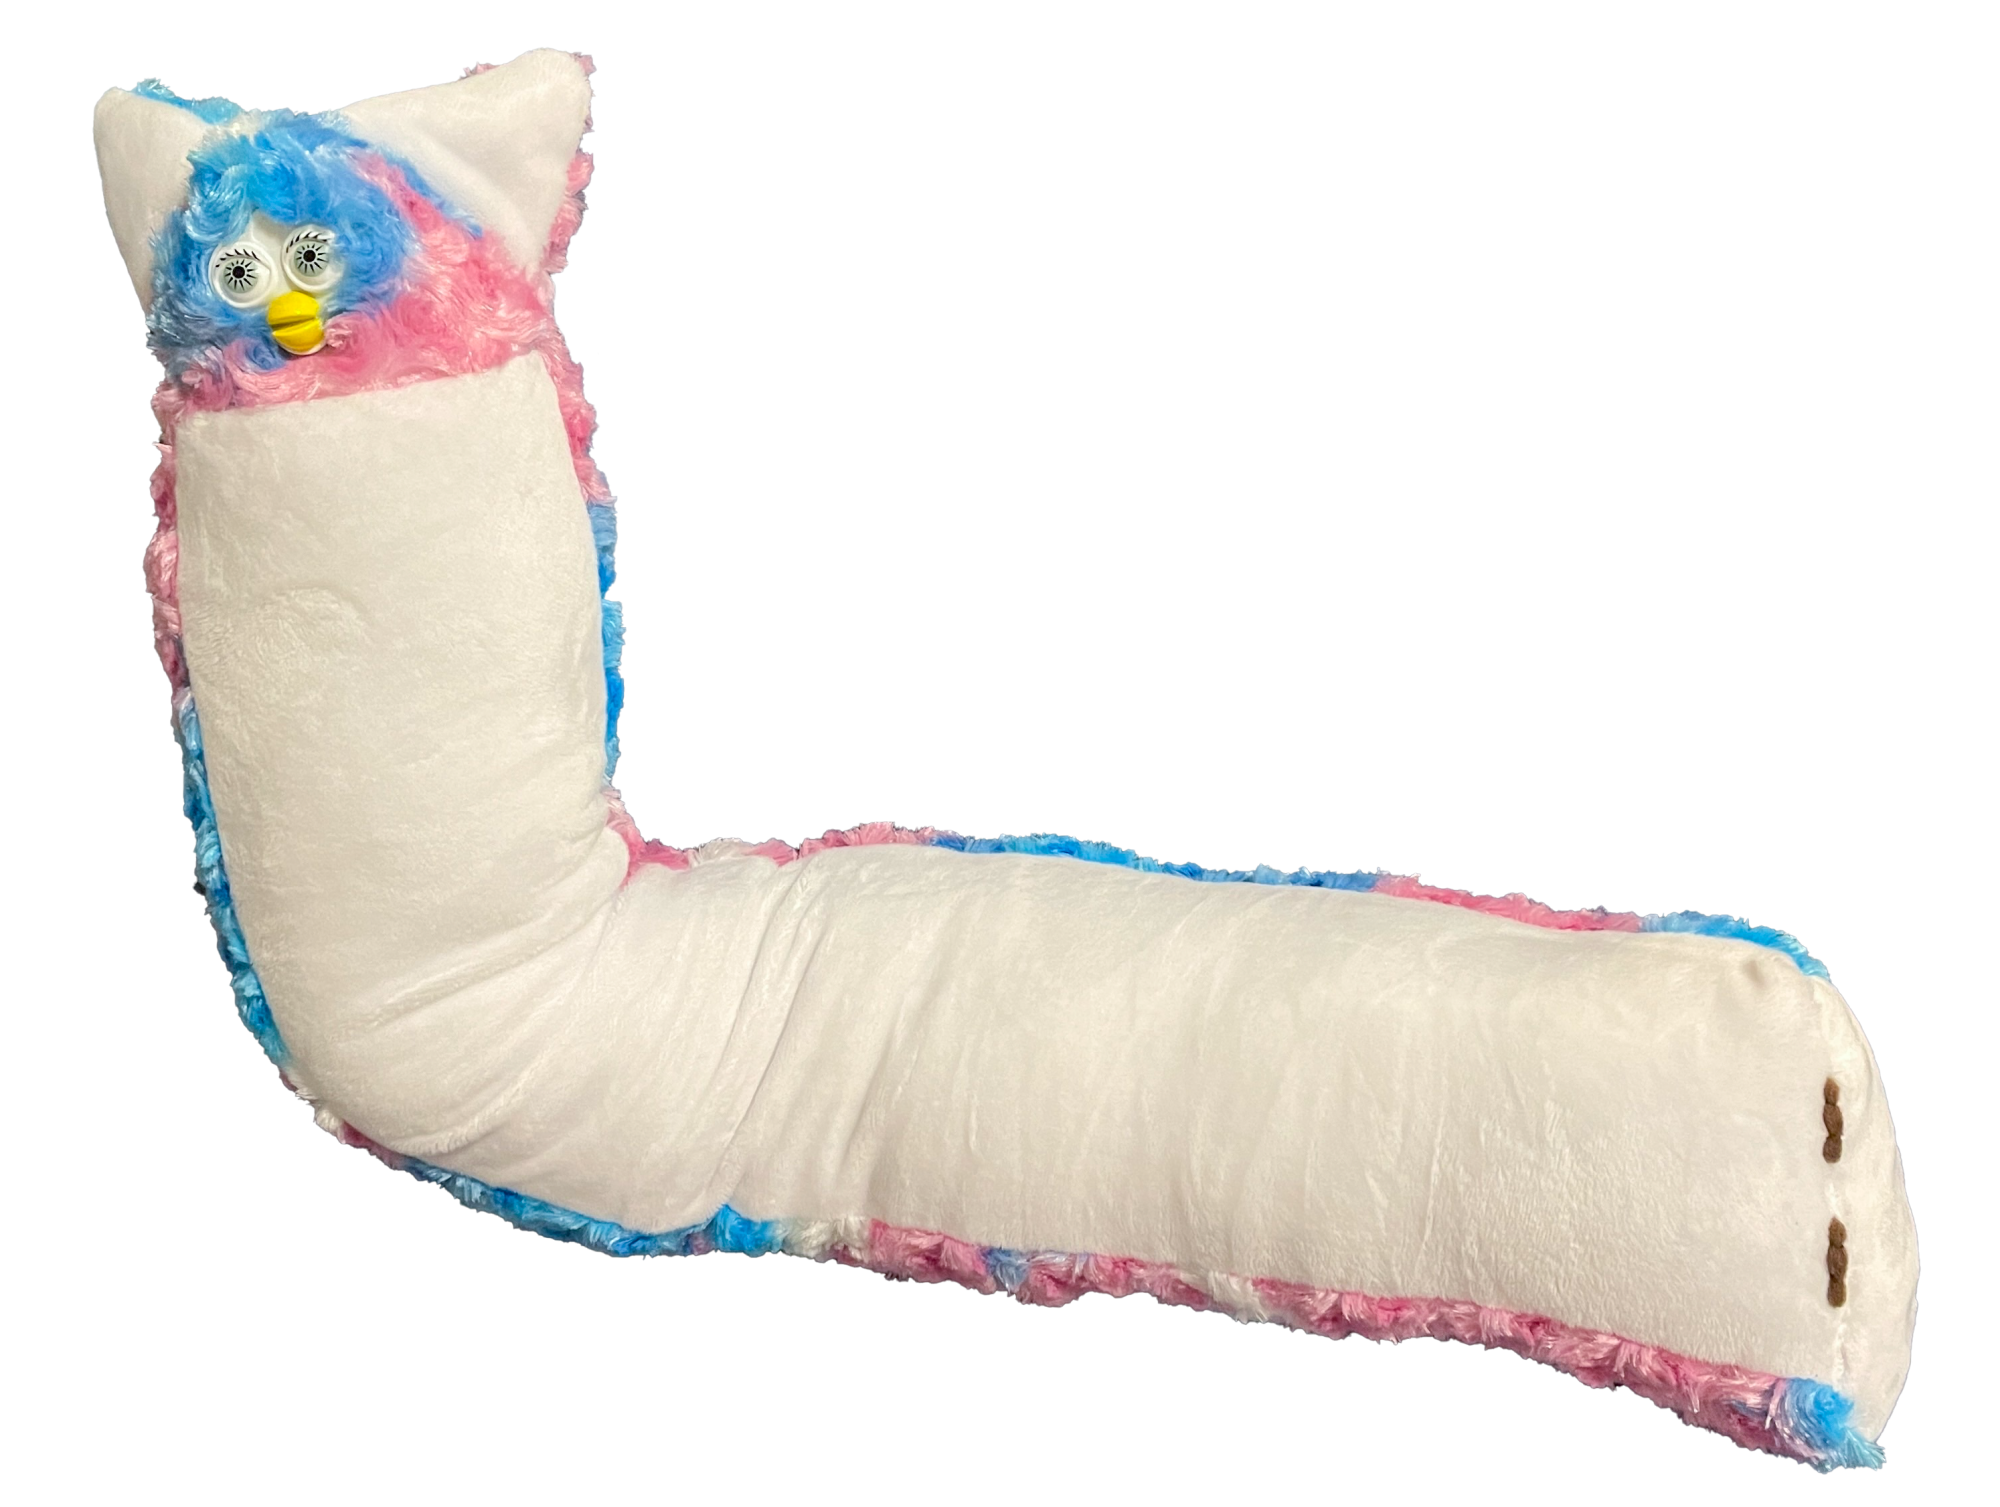 A long Furby plush toy. 